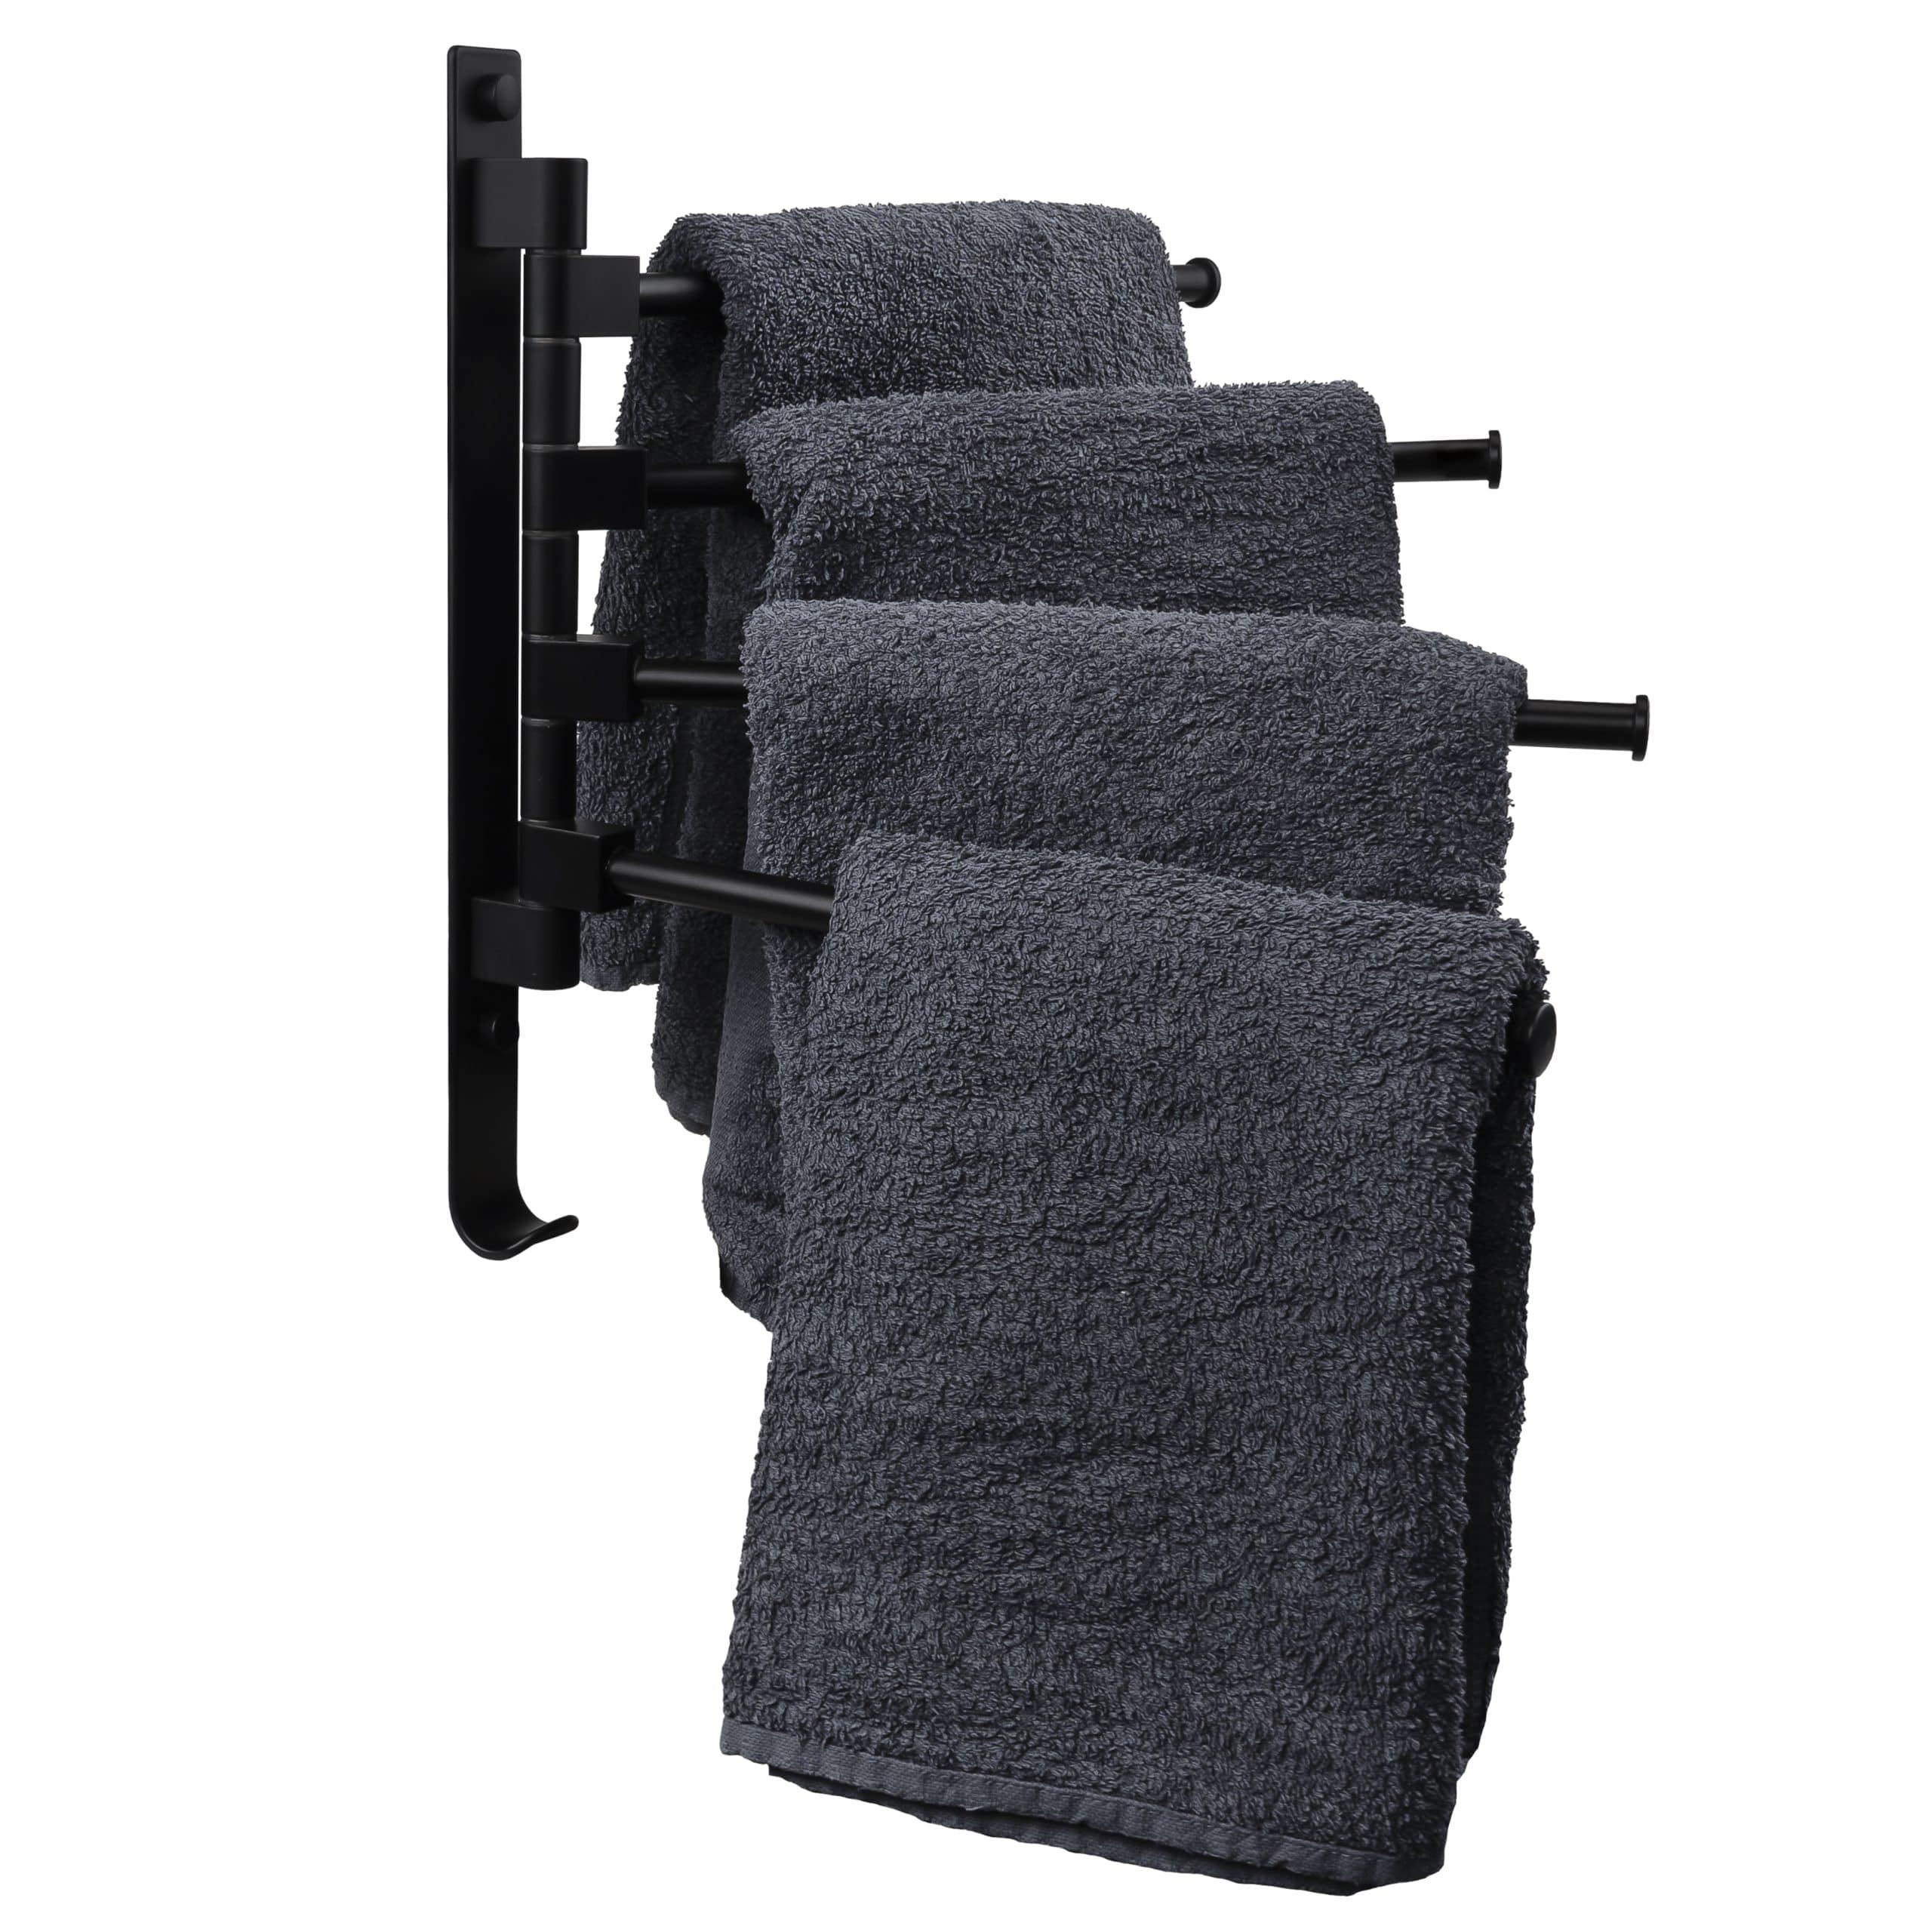 Handdoekenrek met 4 armen